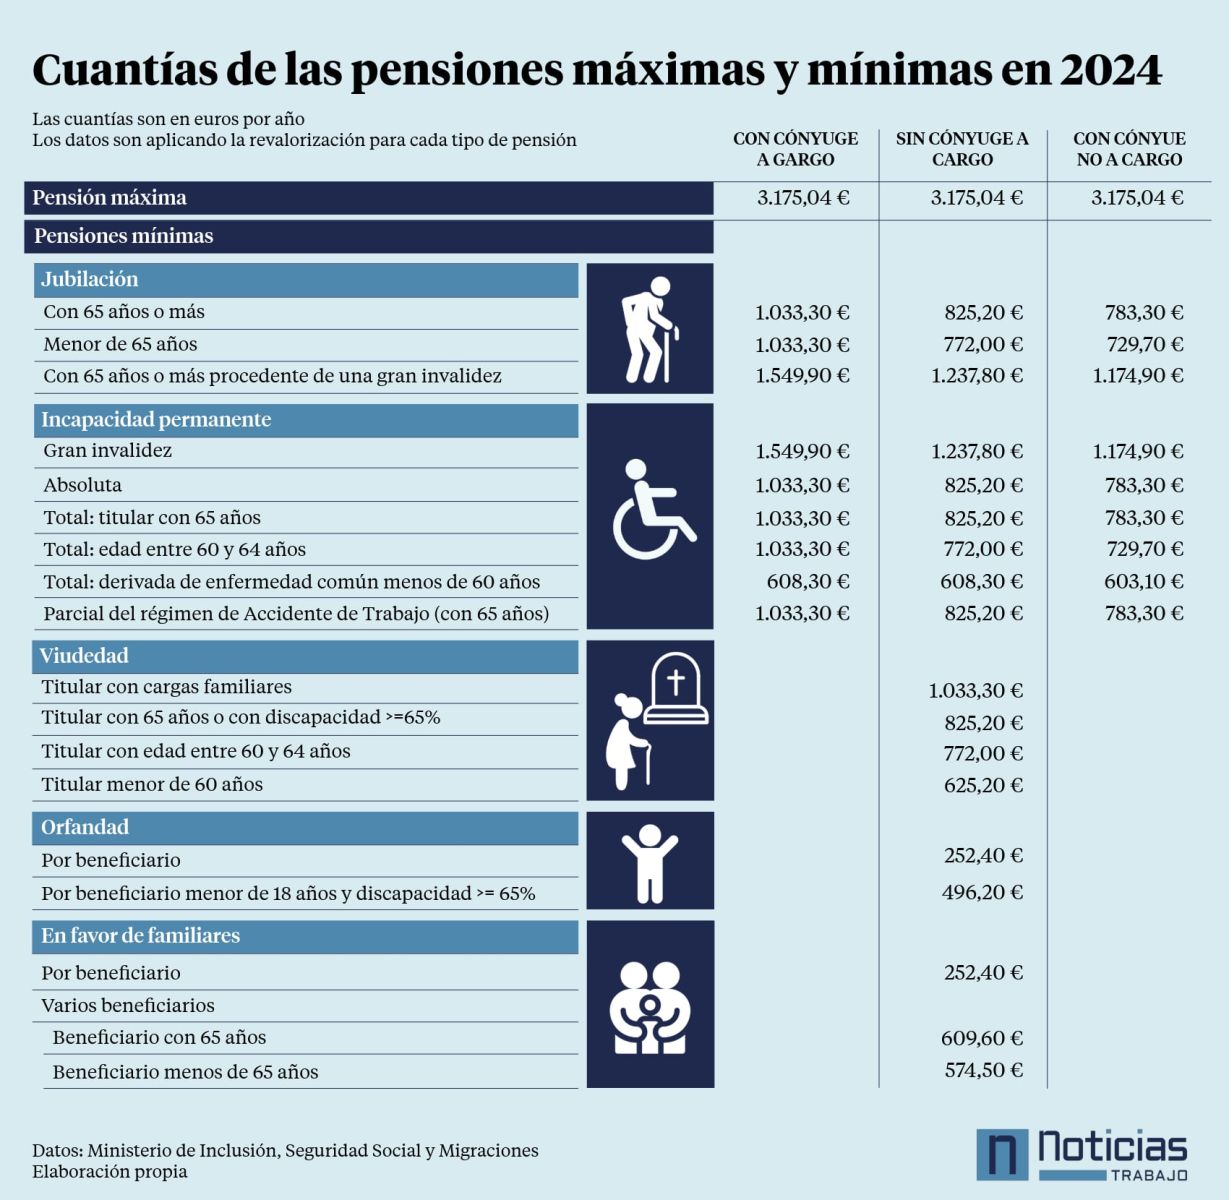 Cuantía mínima y máximas de las pensiones en 2024